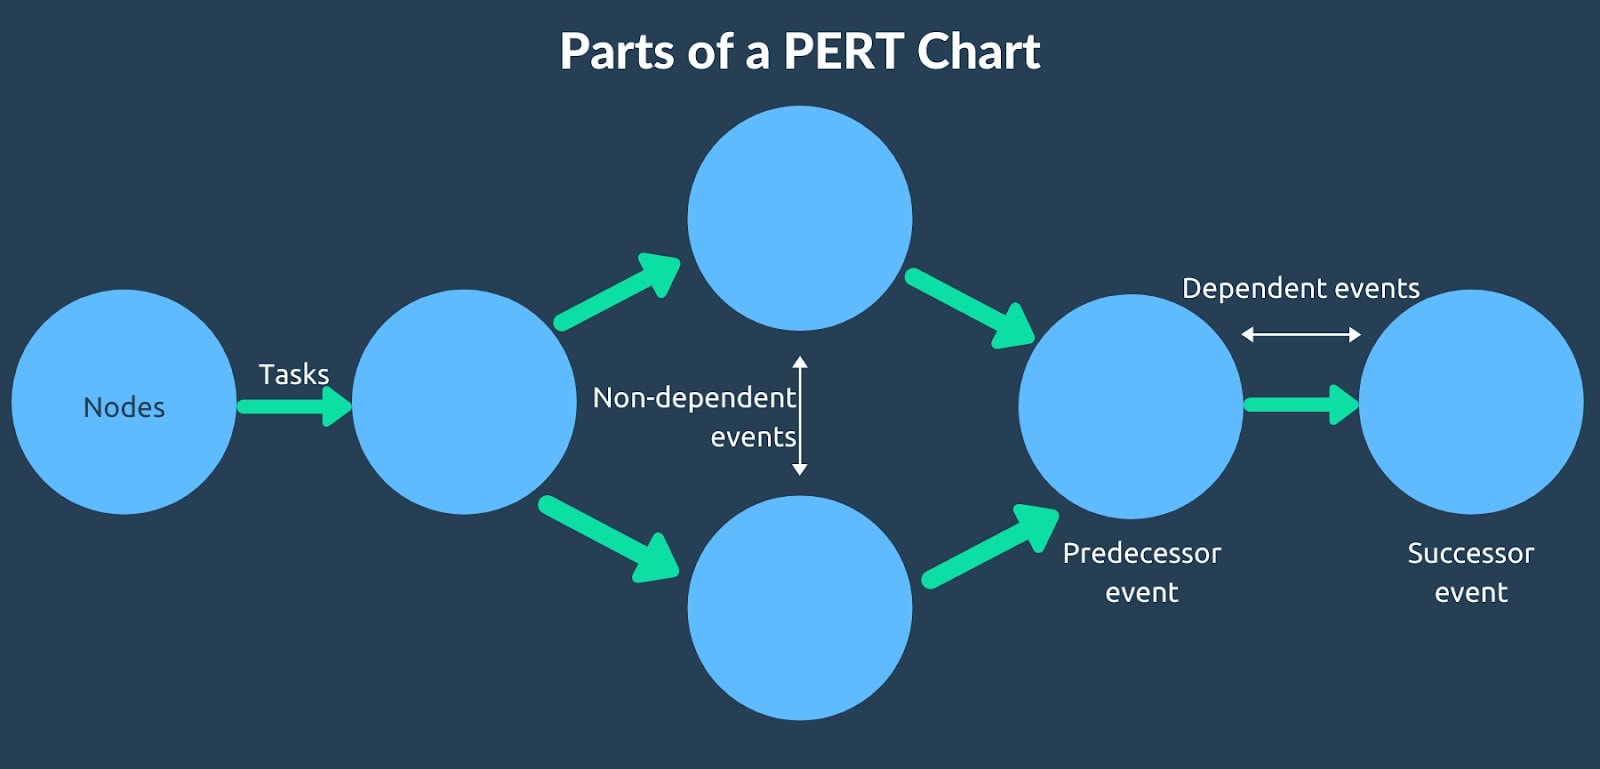 Parts of a PERT chart